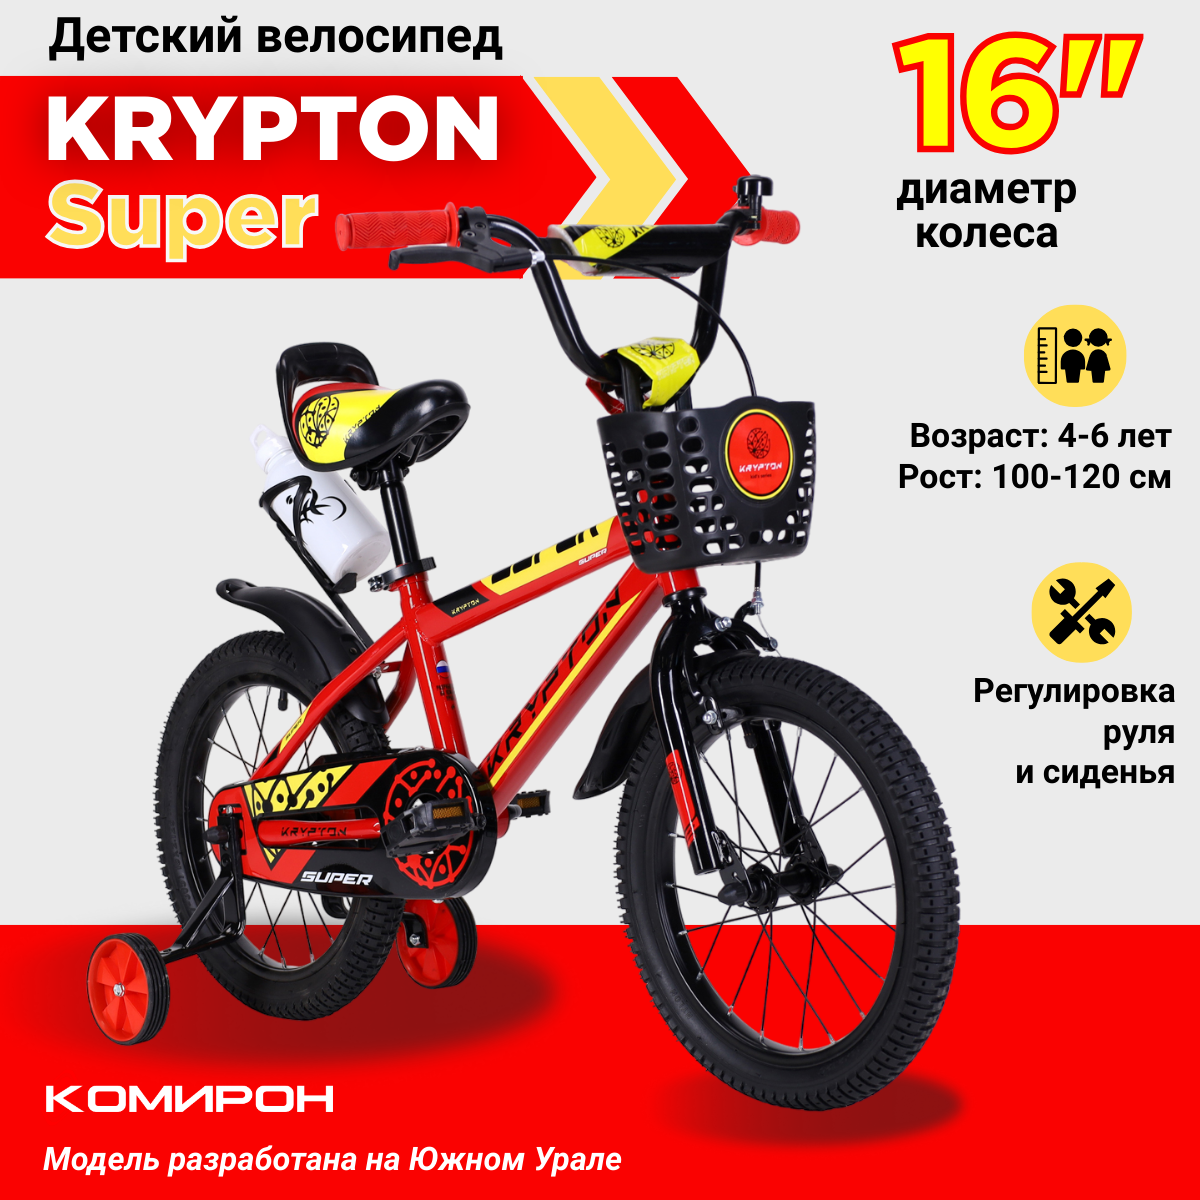 Велосипед детский двухколесный 16" Krypton Super red yellow / на 4-6 лет, рост 100-120 см